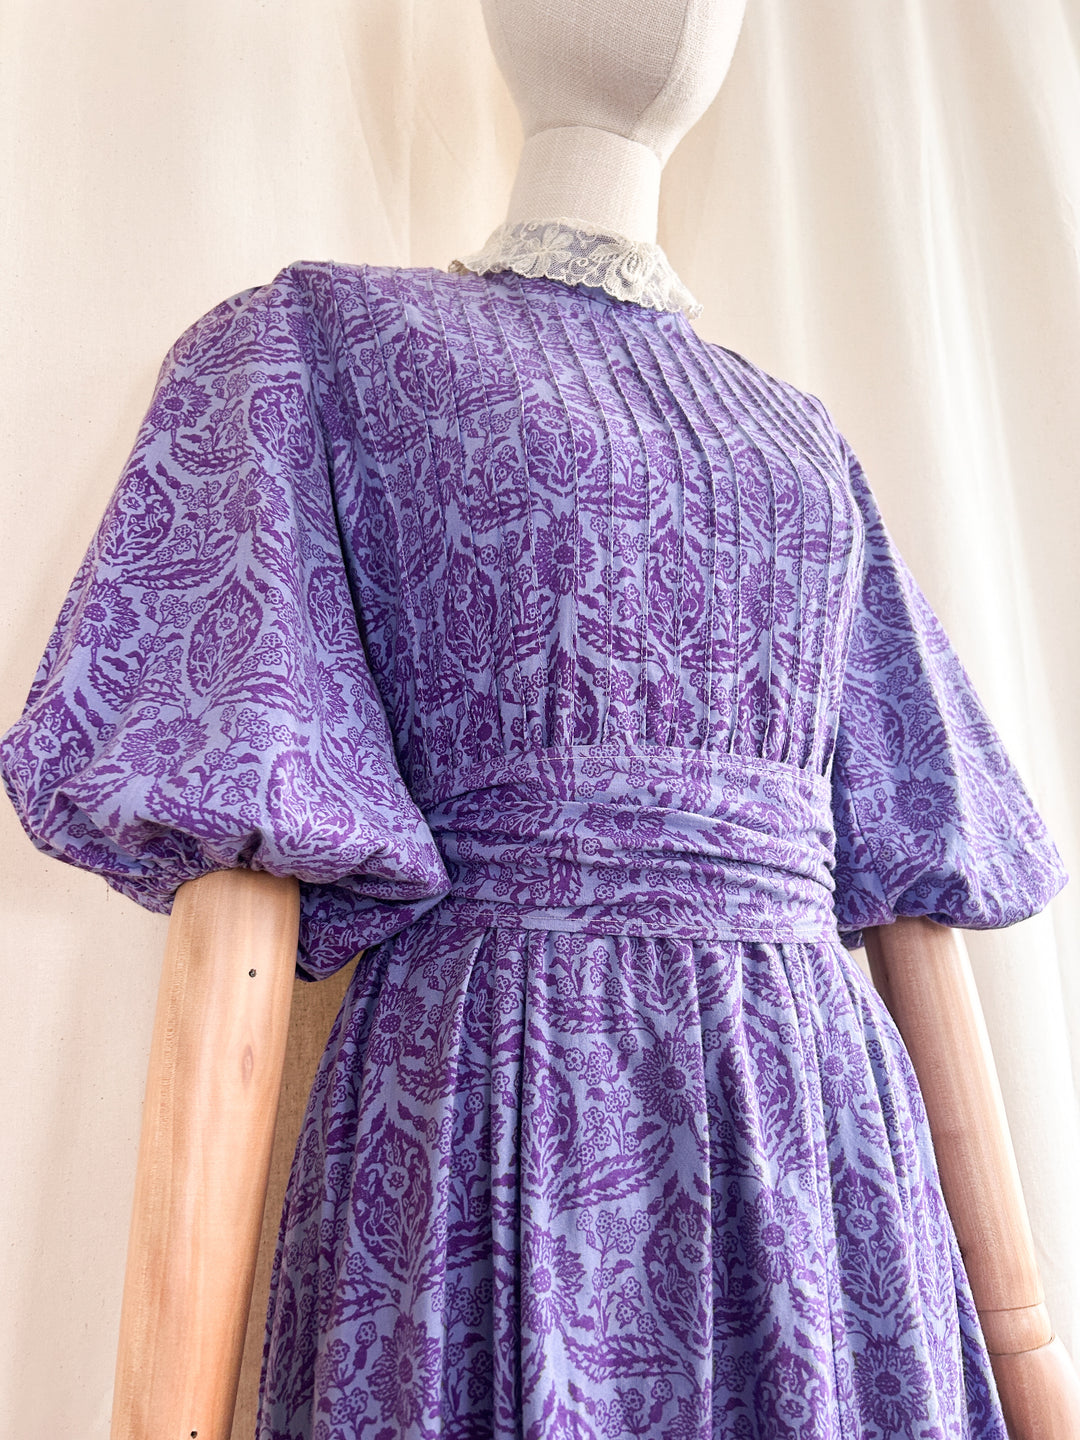 Foxglove ~ Stunning Holy Grail Rare Laura Ashley Puff sleeve Romantic prairie dress